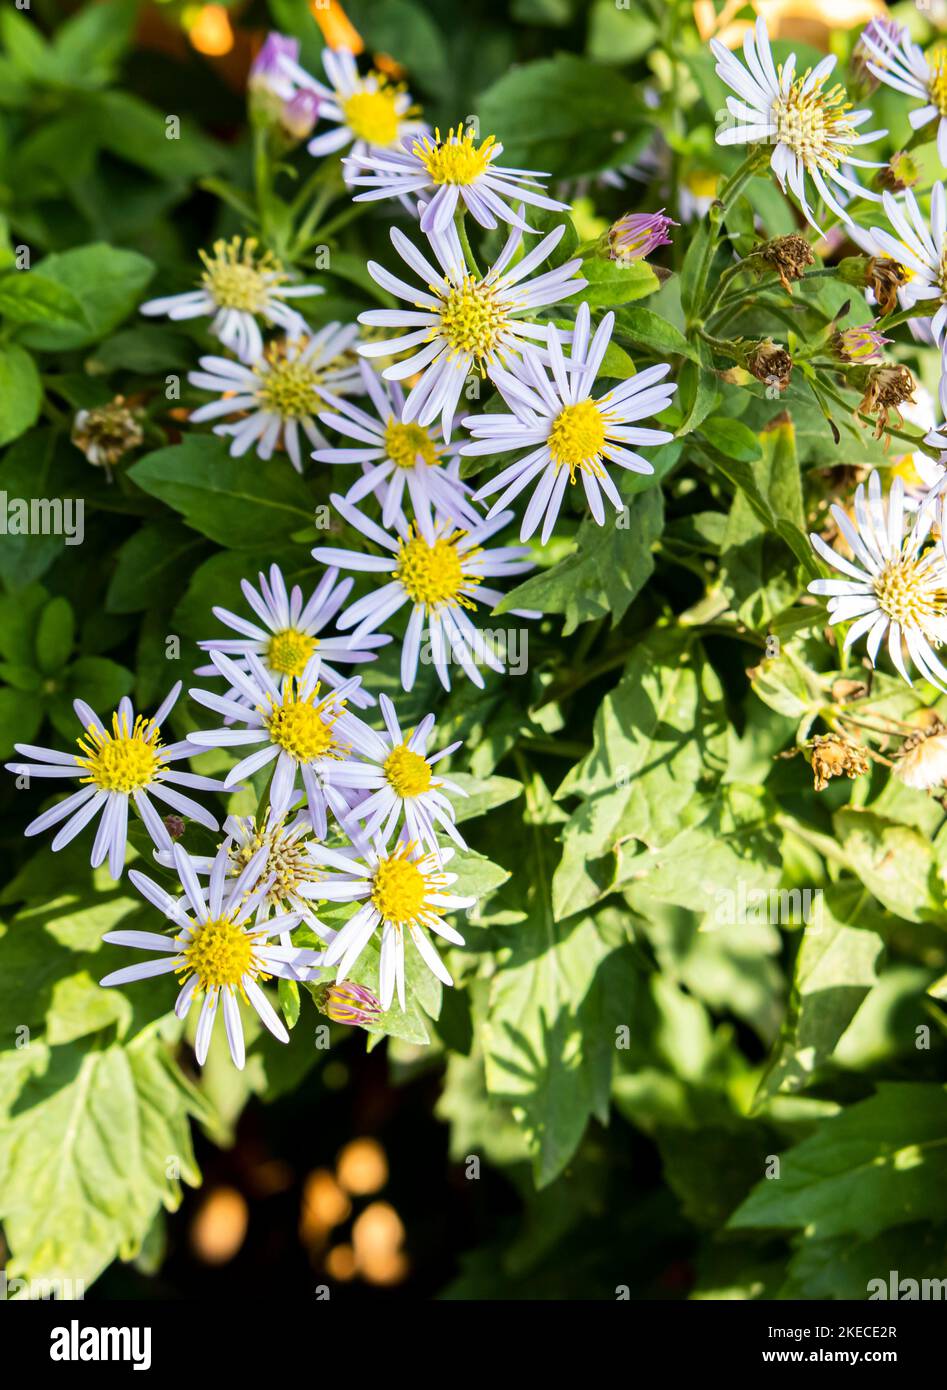 Aster x dumosus ,Aster ,White flower Stock Photo